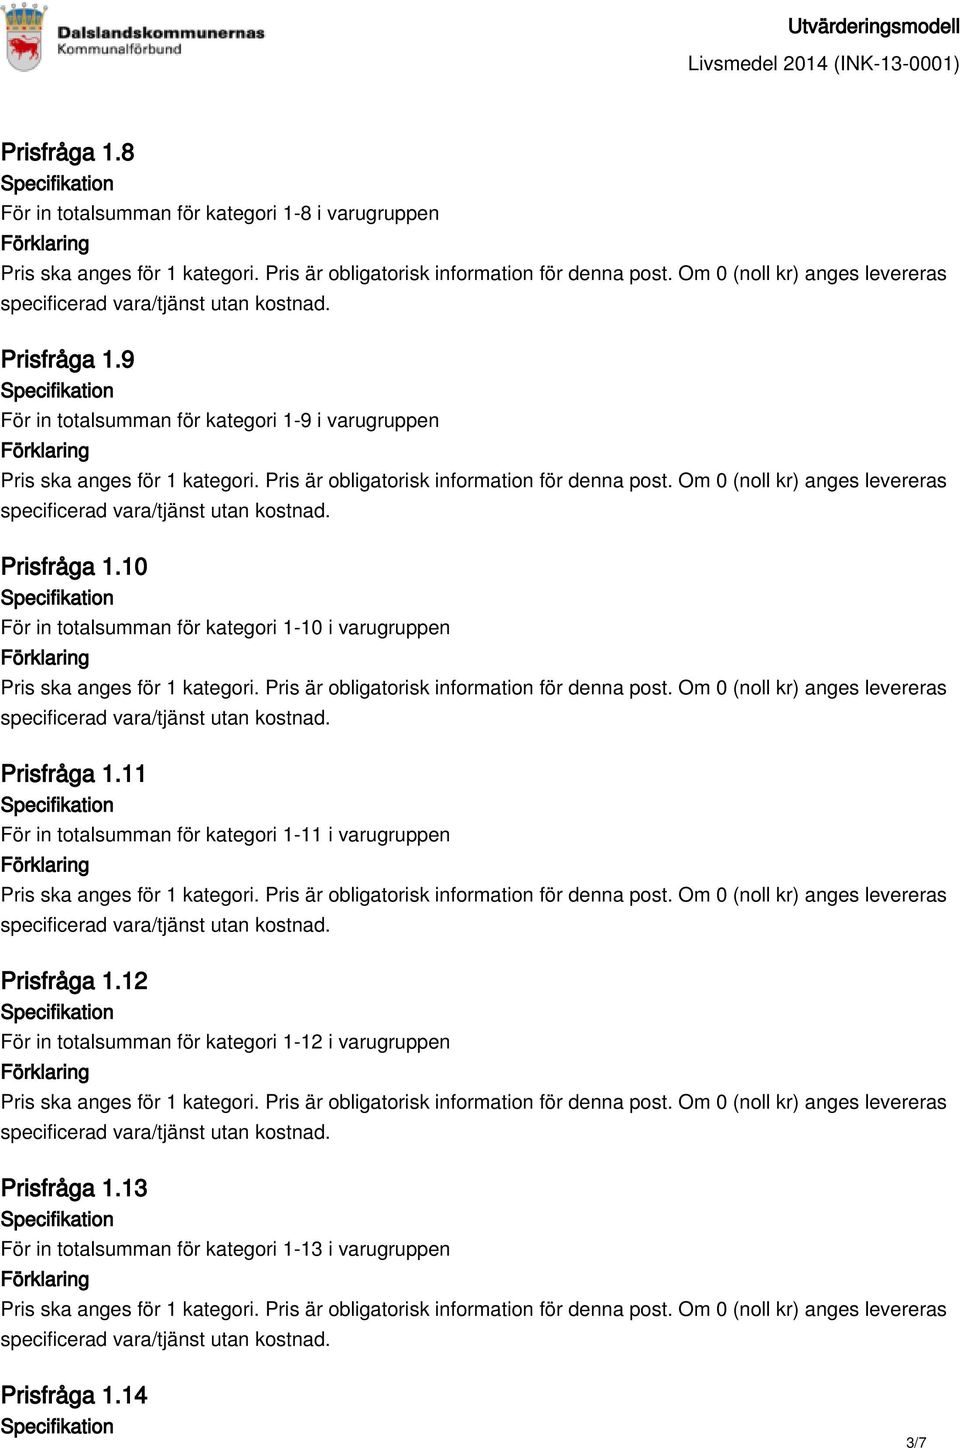 10 För in totalsumman för kategori 1-10 i varugruppen Prisfråga 1.